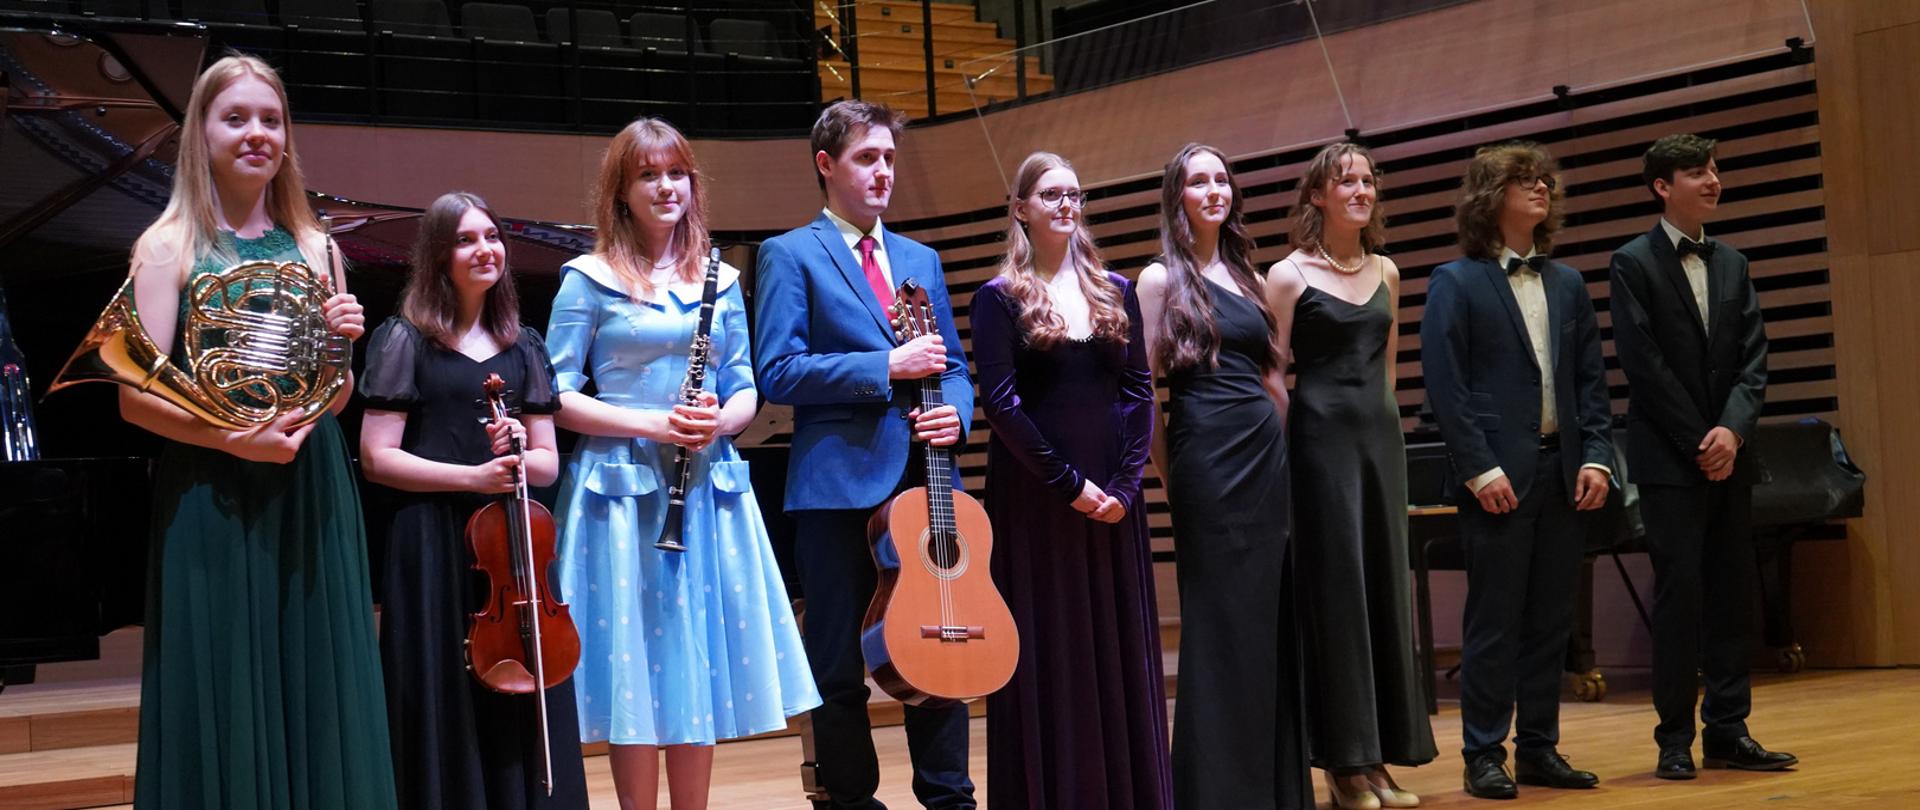 Grupa młodzieży sześciu dziewcząt i trzech chłopców stoi w jednym rzędzie na estradzie sali koncertowej. Osoby po lewej stronie trzymają przed sobą waltornię, altówkę, klarnet i gitarę.